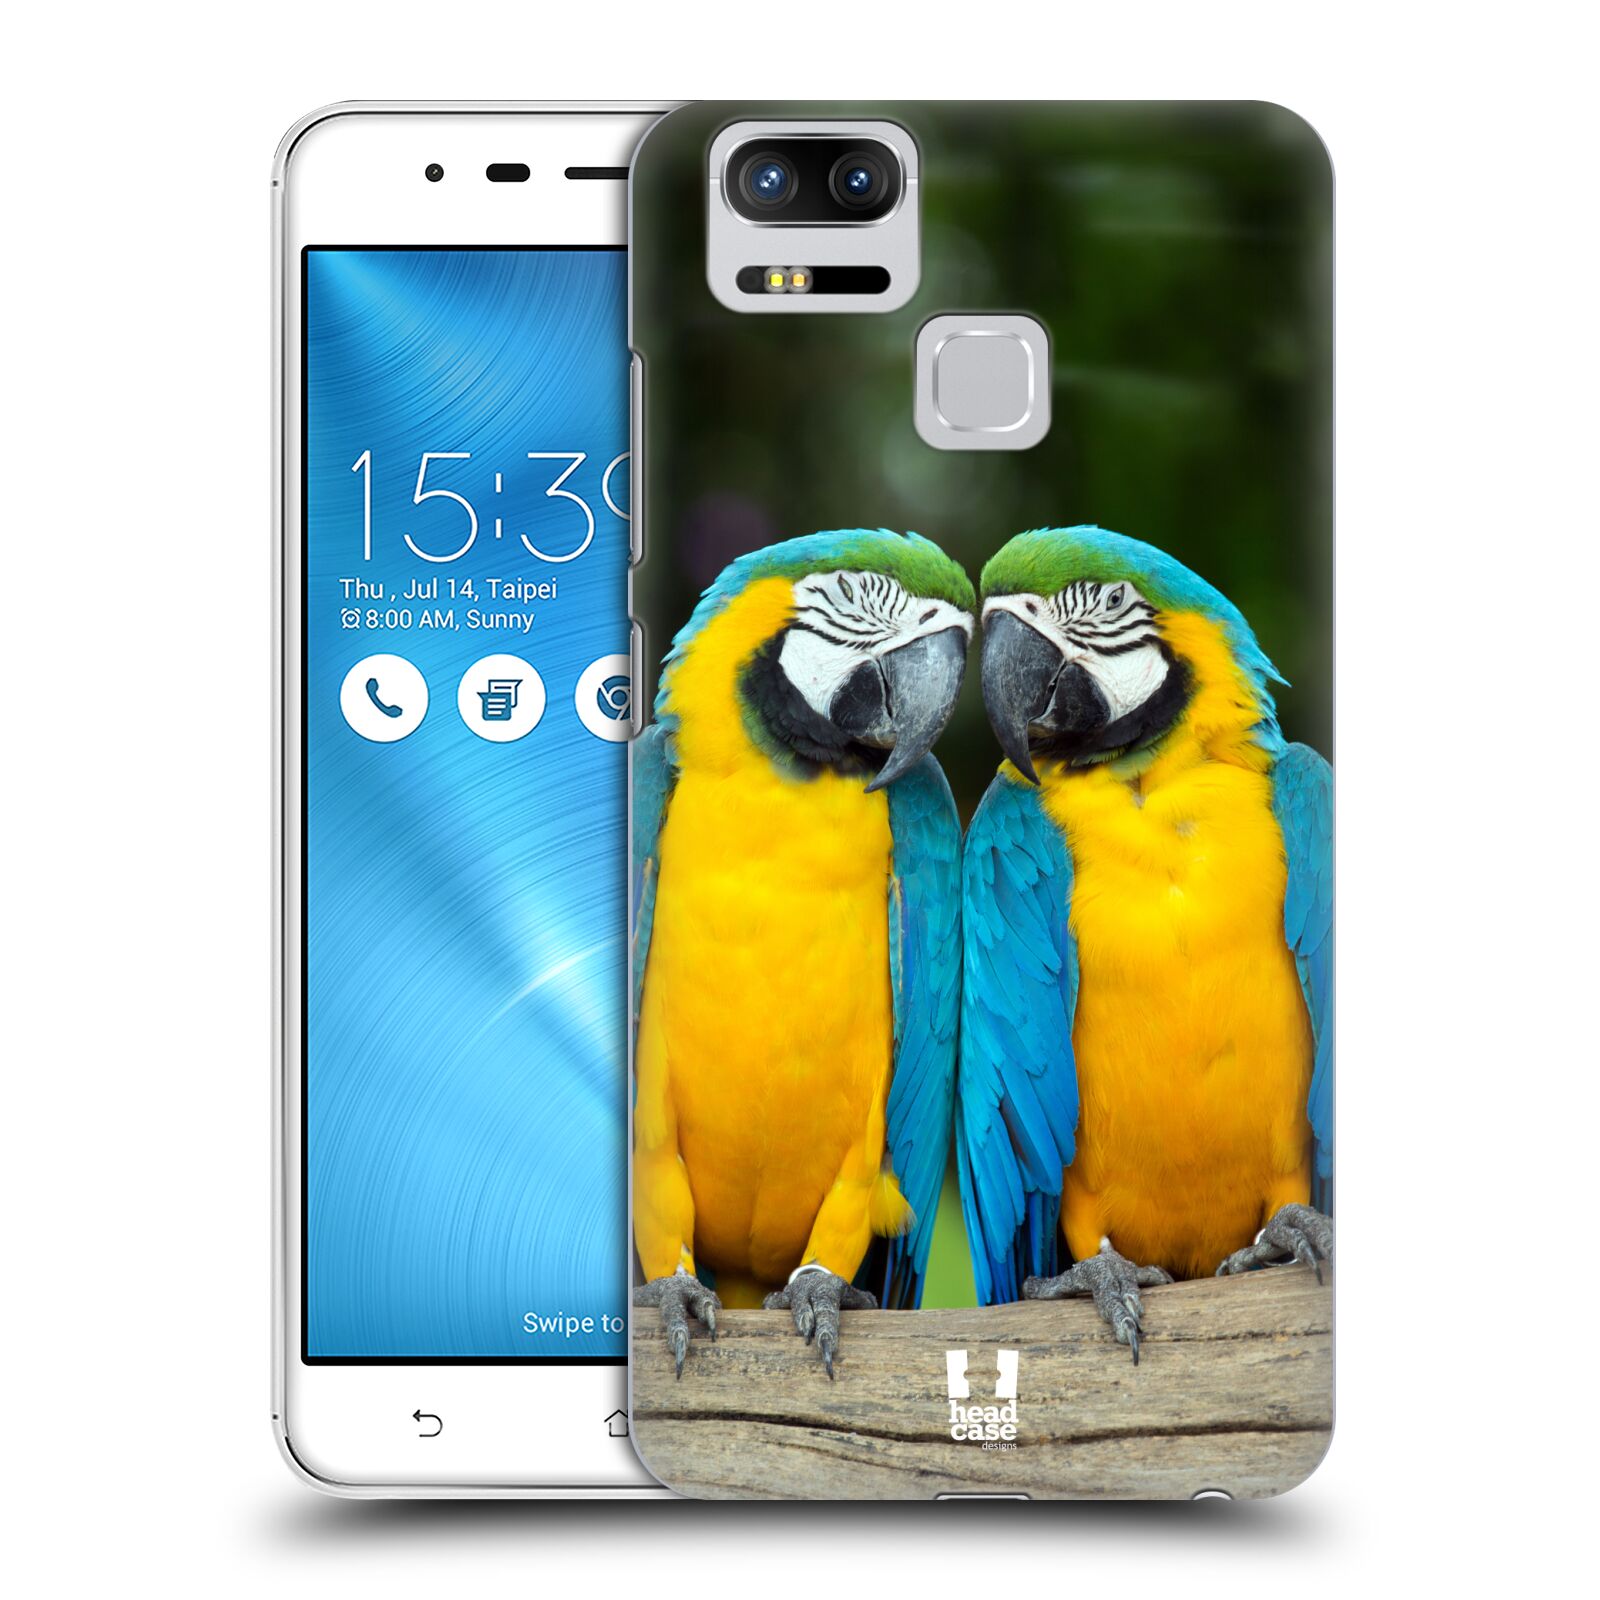 HEAD CASE plastový obal na mobil Asus Zenfone 3 Zoom ZE553KL vzor slavná zvířata foto dva papoušci